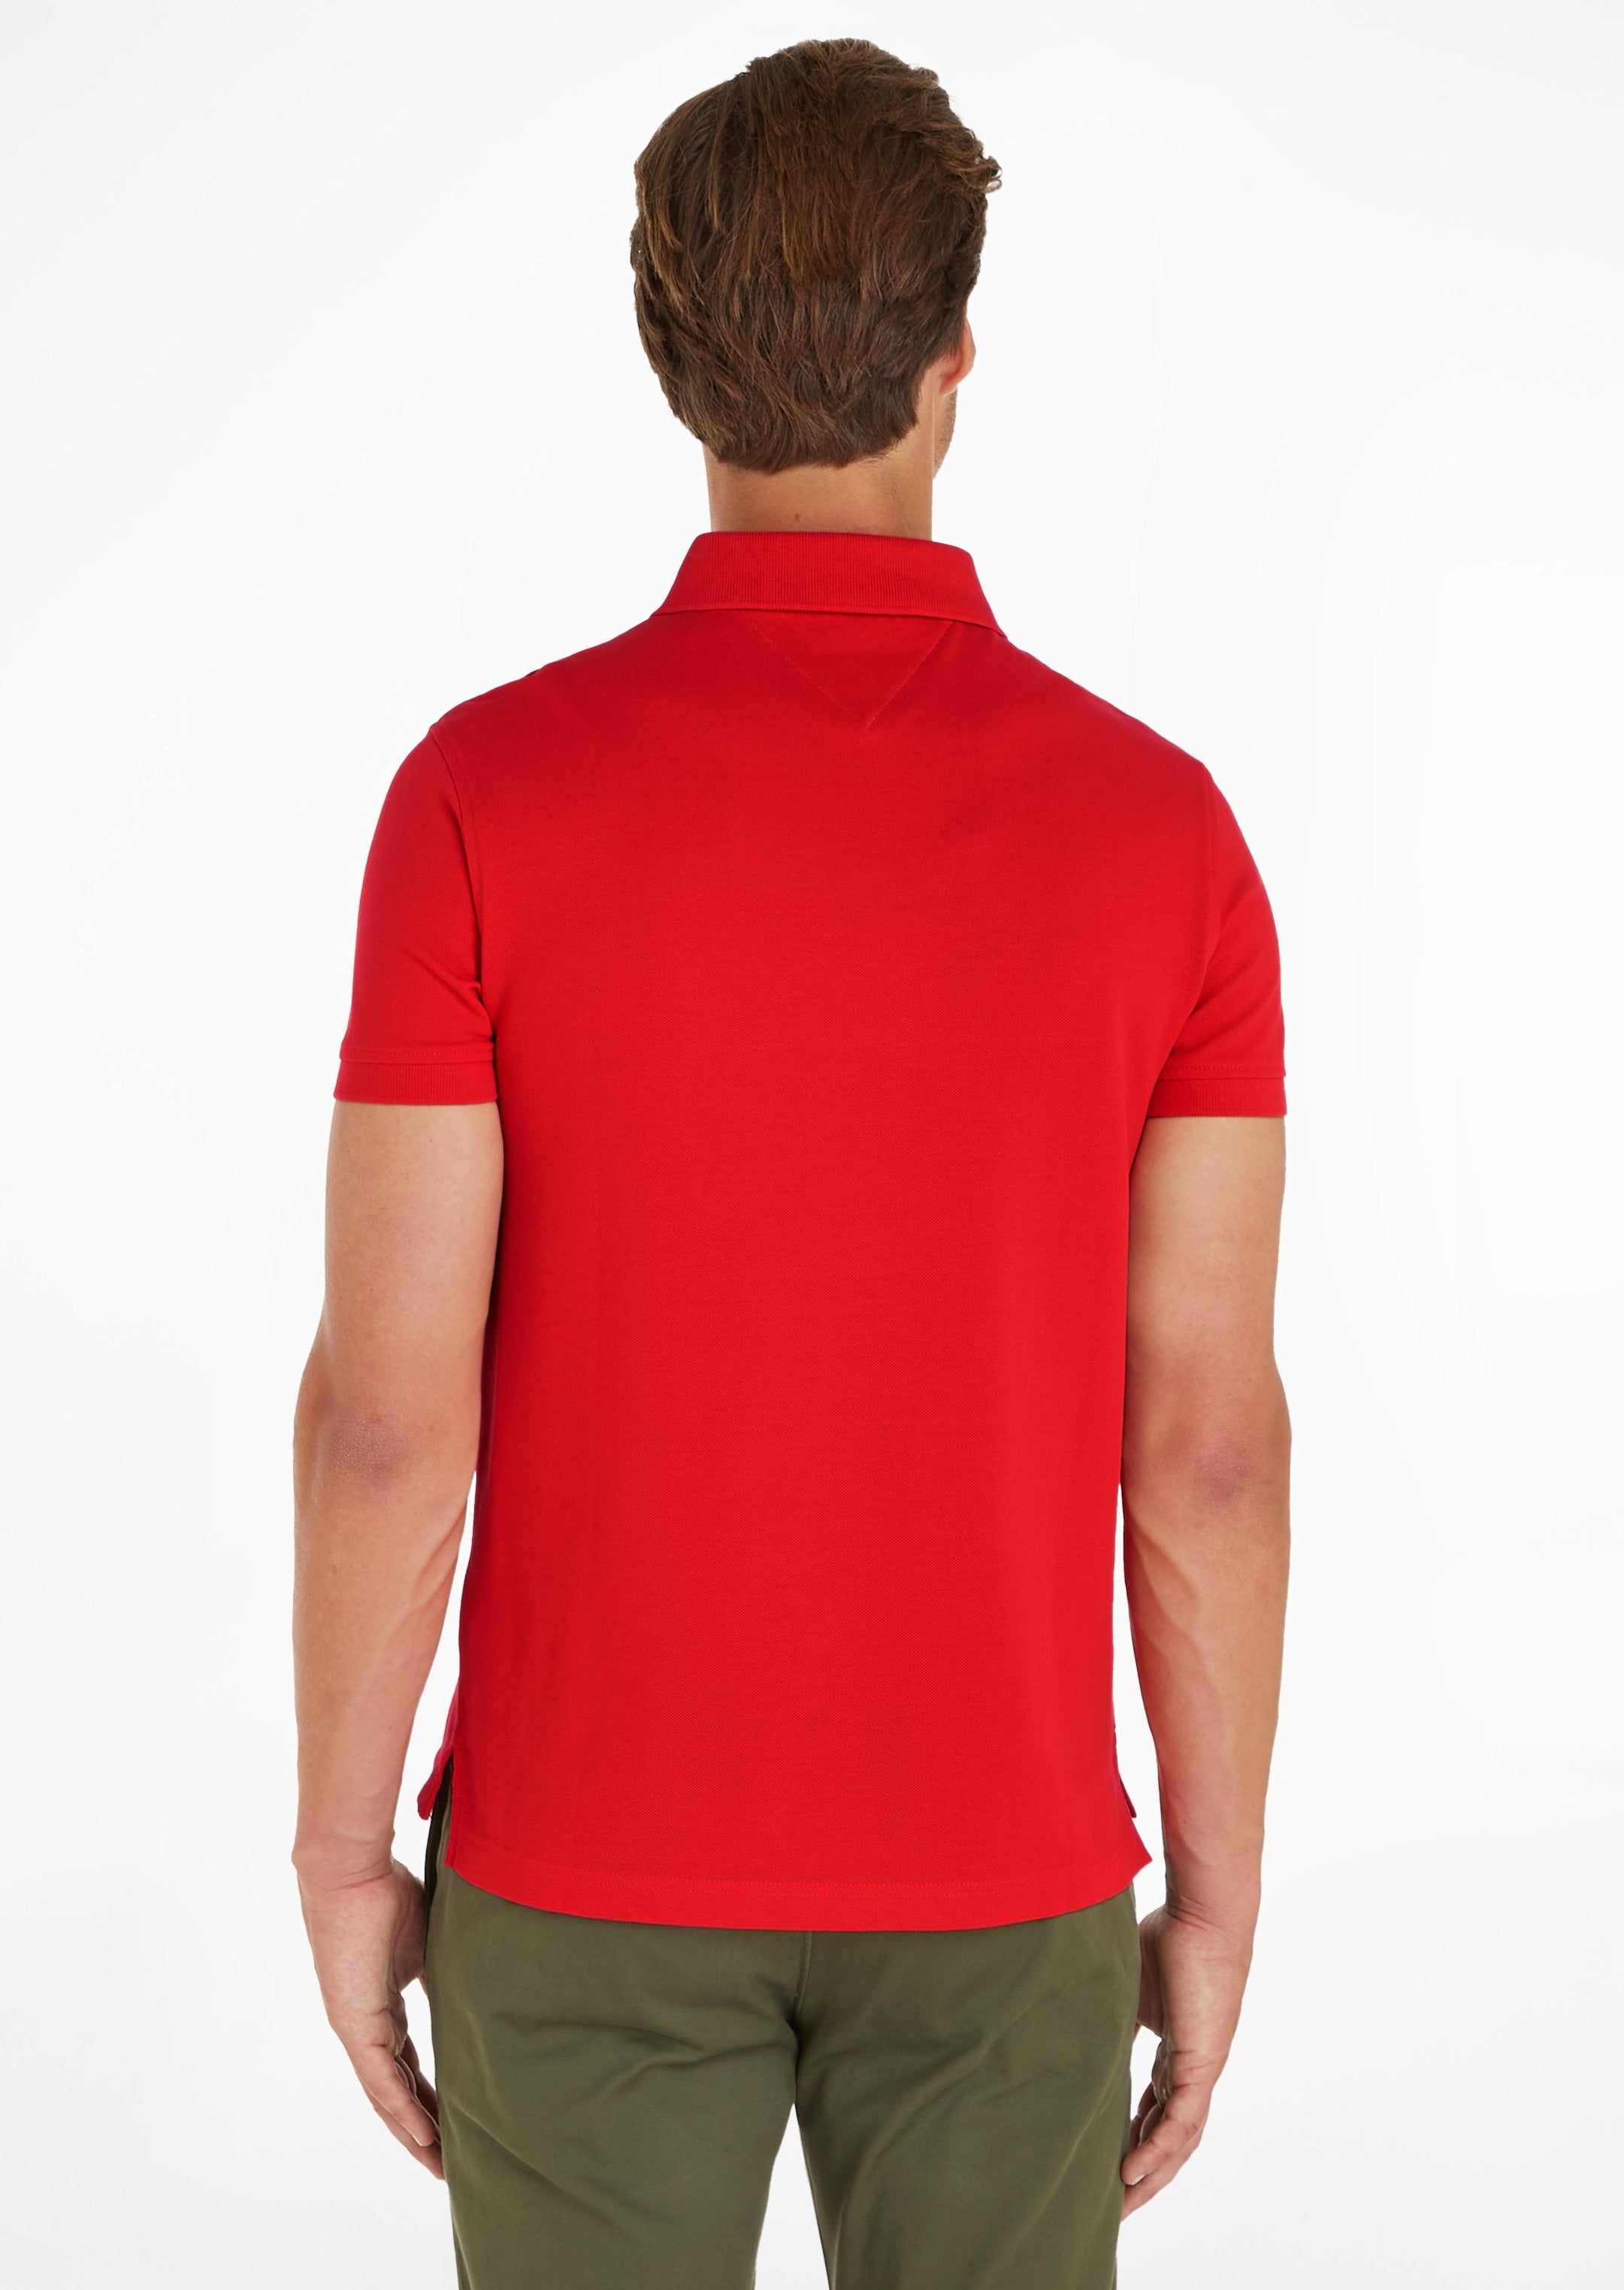 Polo Tommy Hilfiger ajusté rouge en coton bio stretch